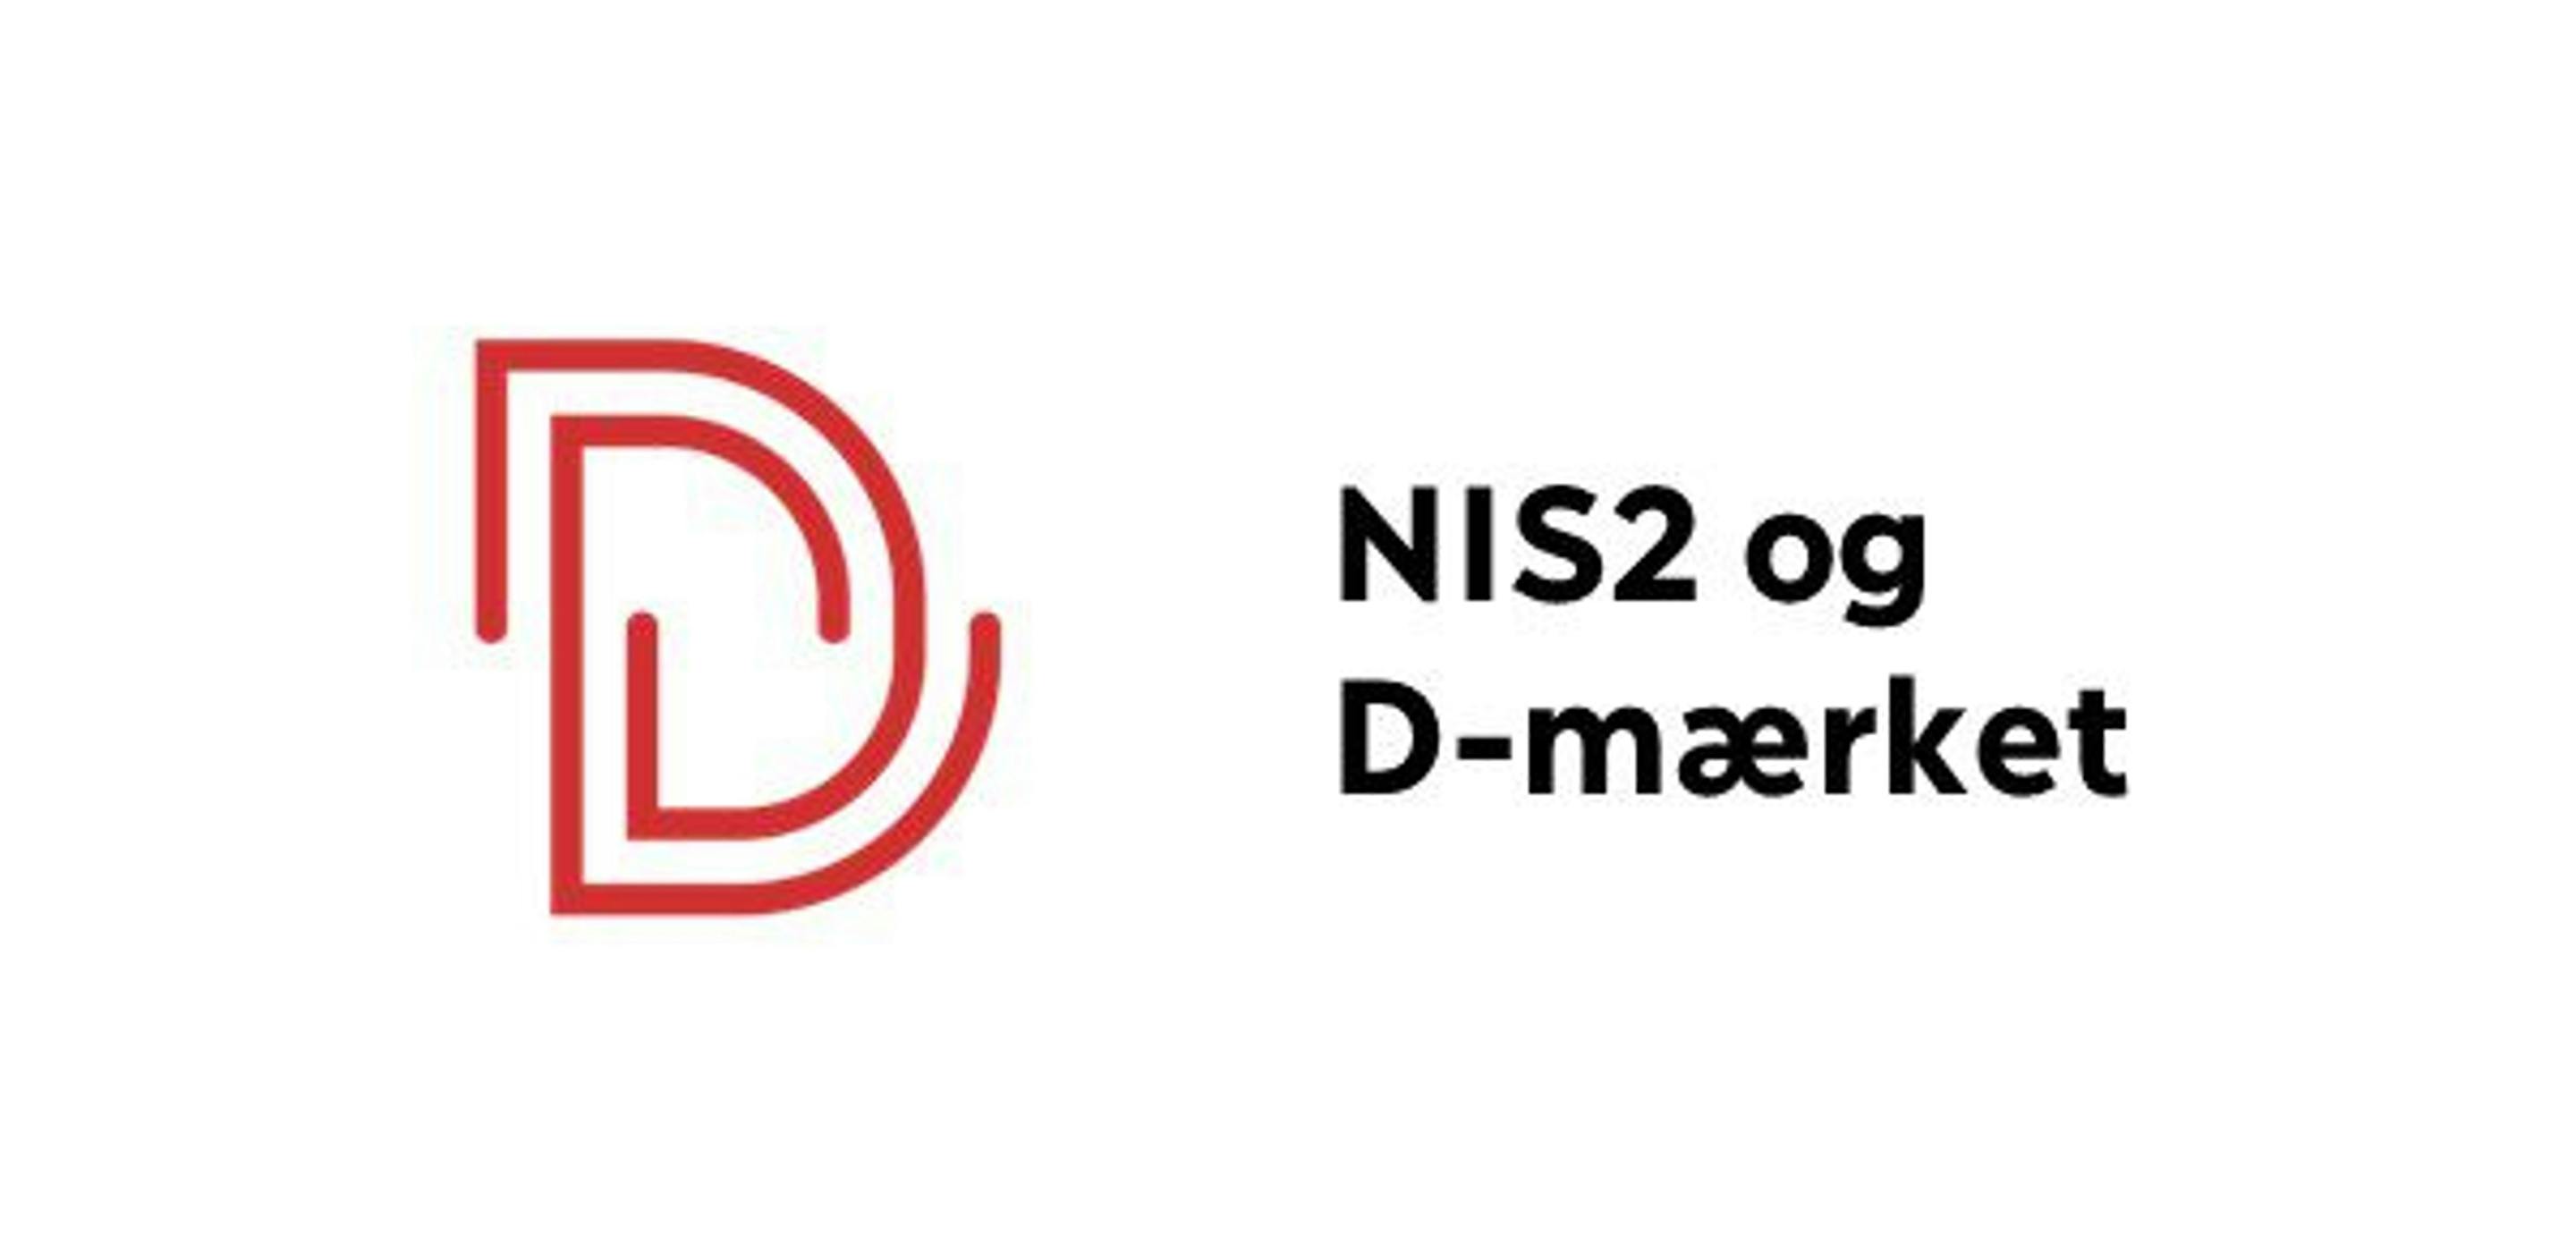 NIS2 og D-mærket